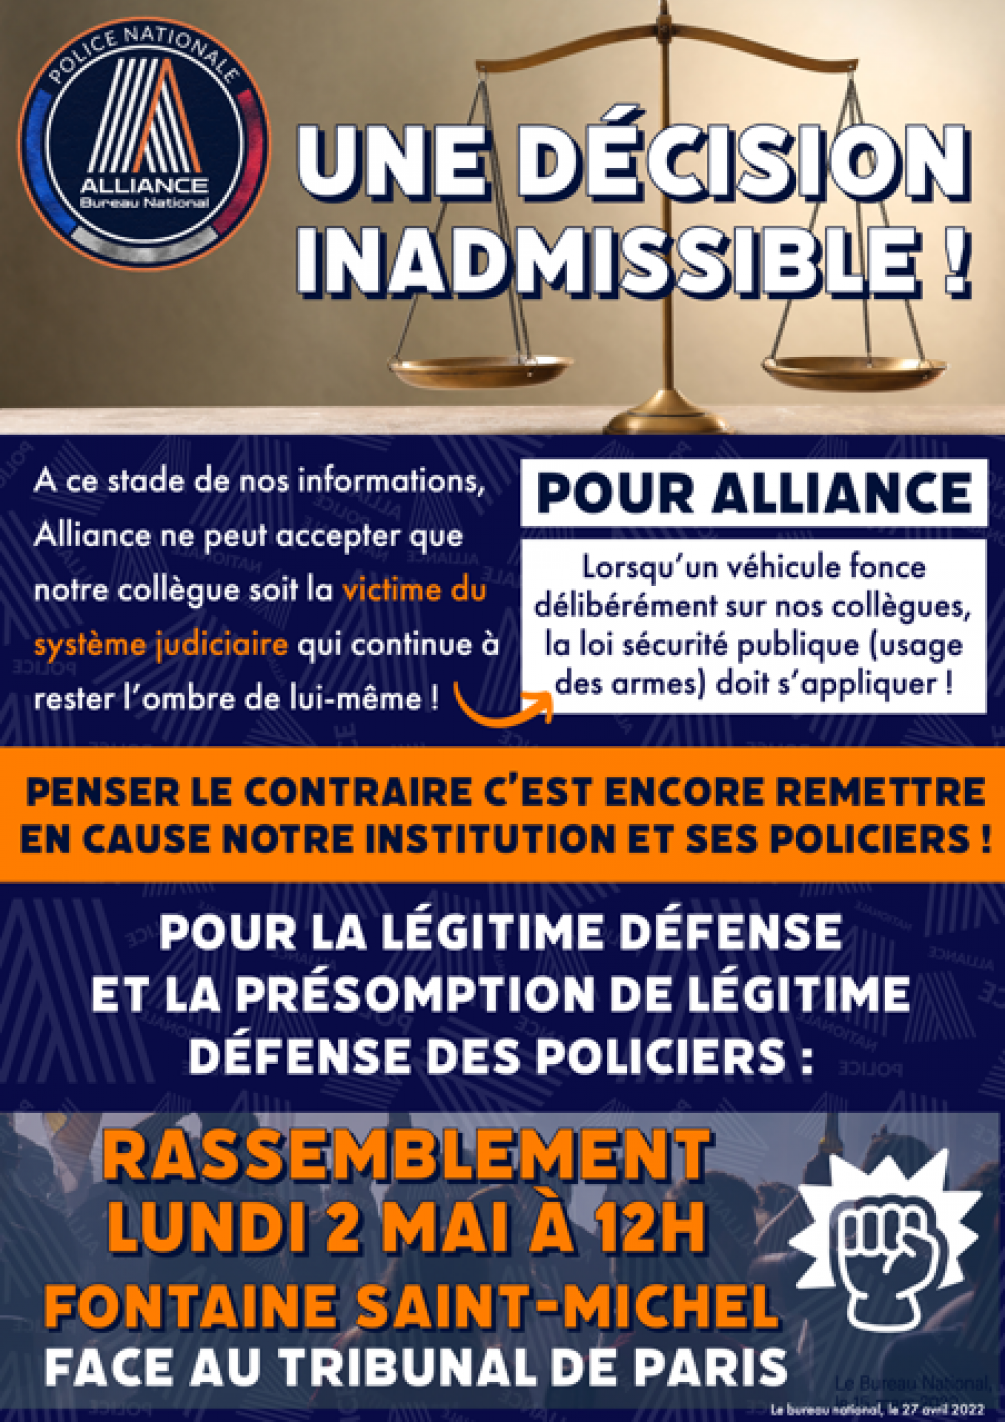 Une décision inadmissible !  Rassemblement lundi 2 mai à 12h à Paris